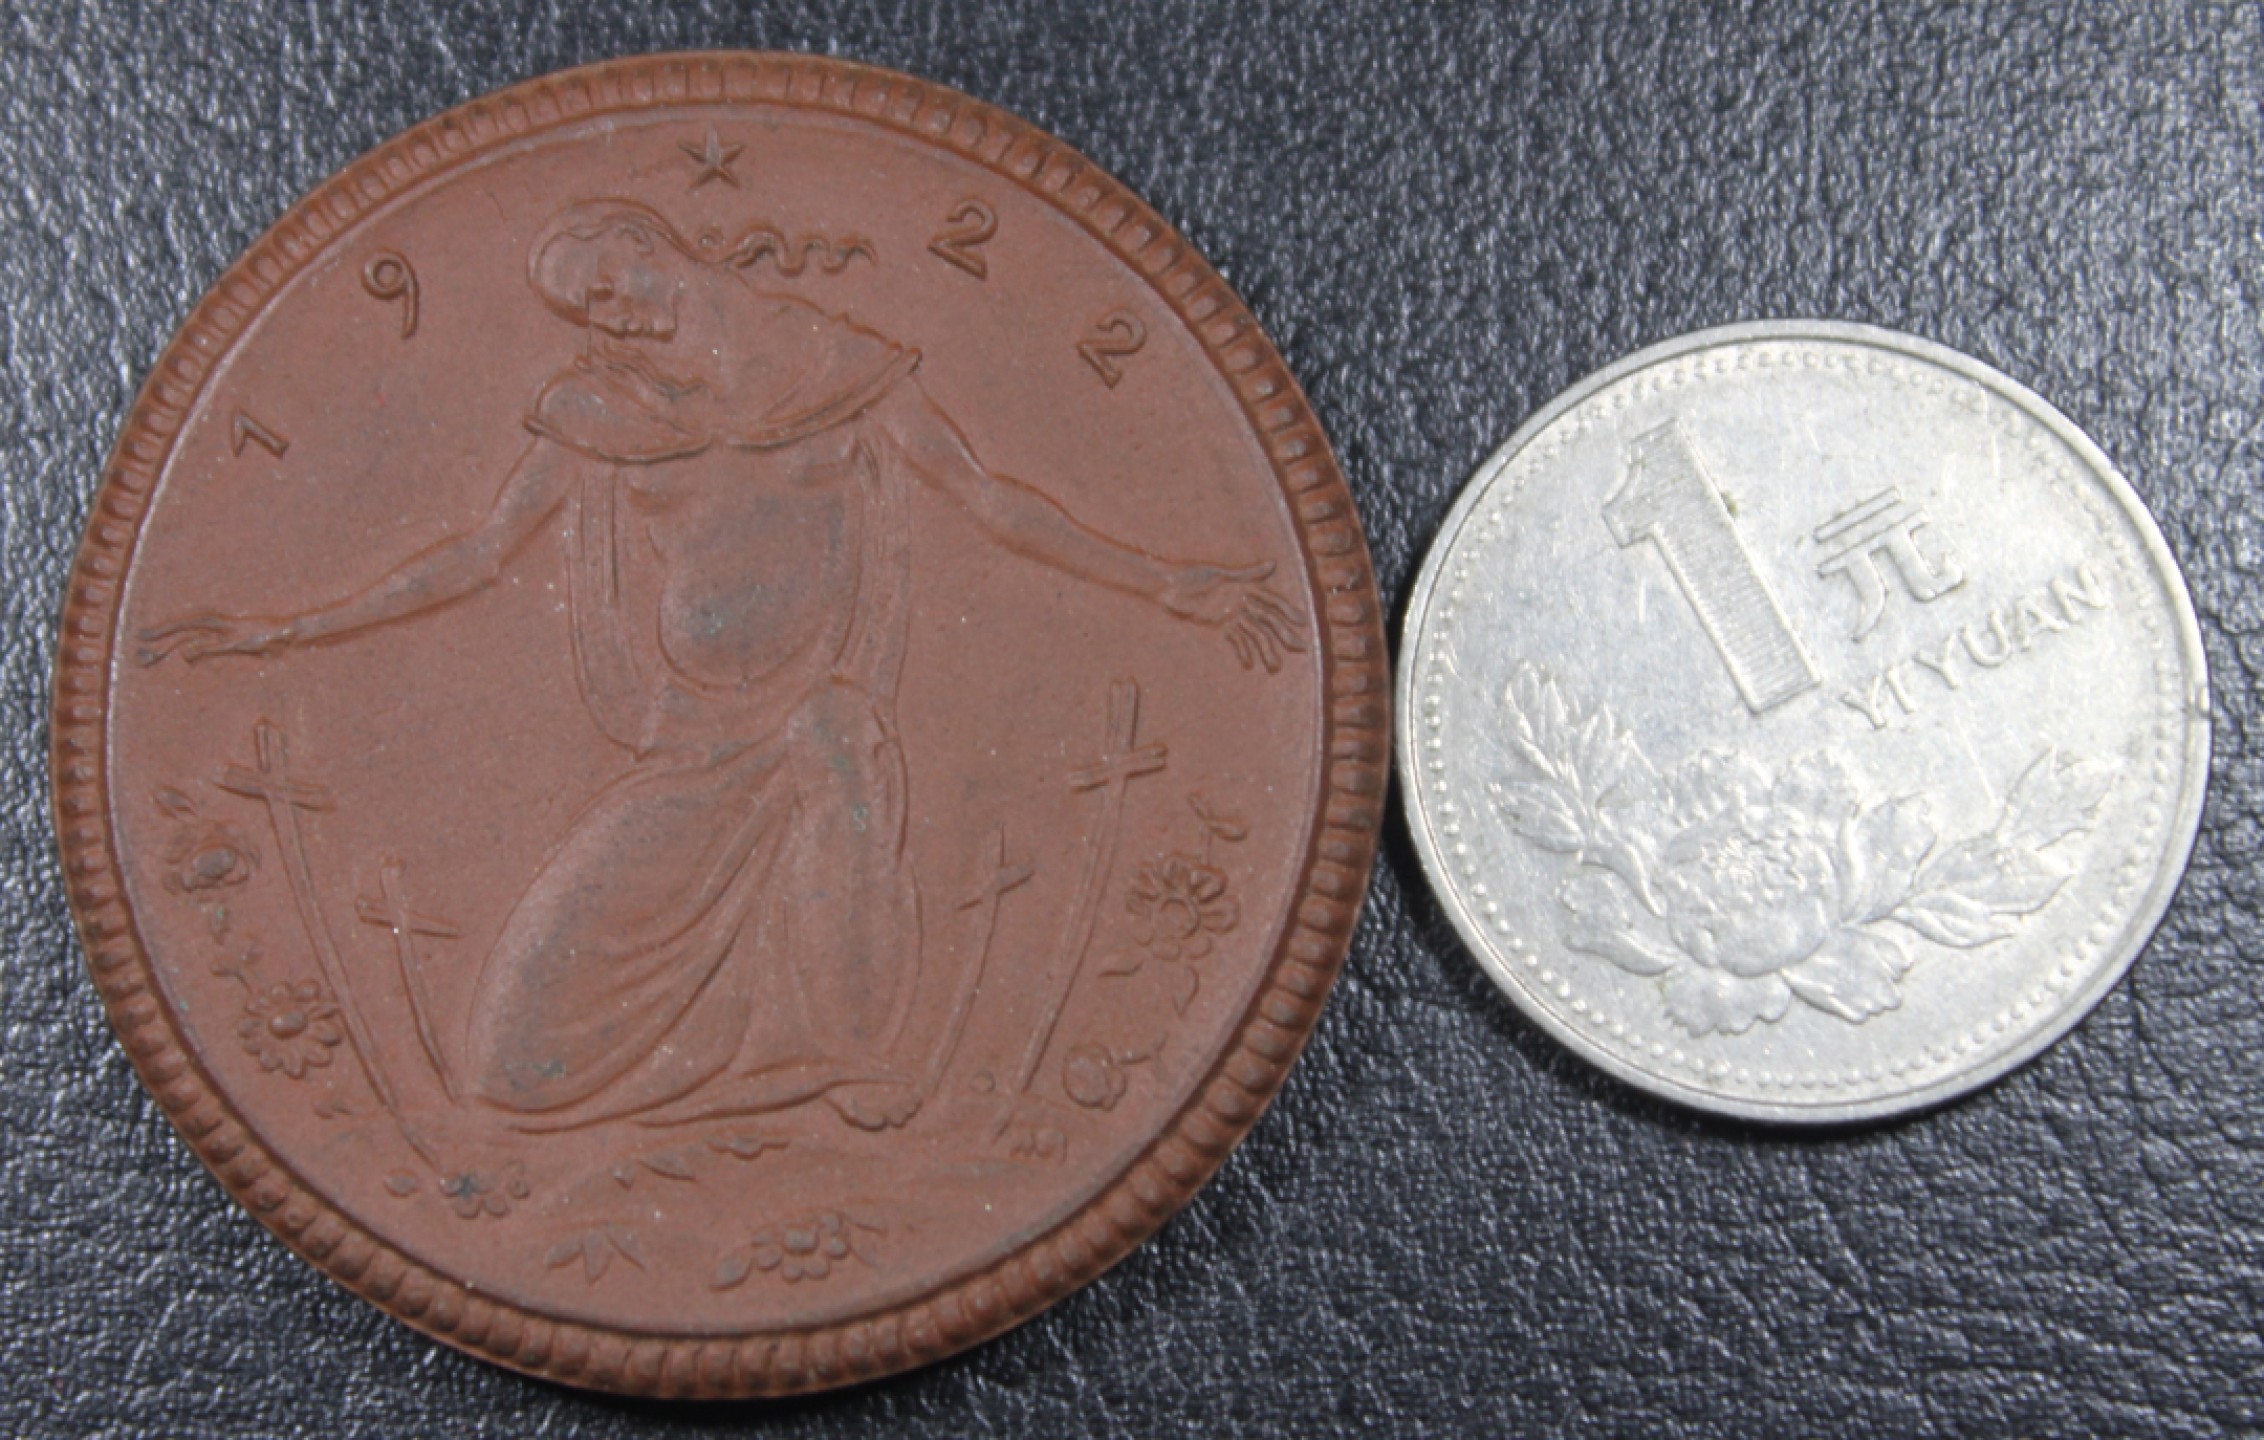 巴斯克收藏世界硬币第11期纪念币精选老银币全场包邮17/18/19号0元起三 